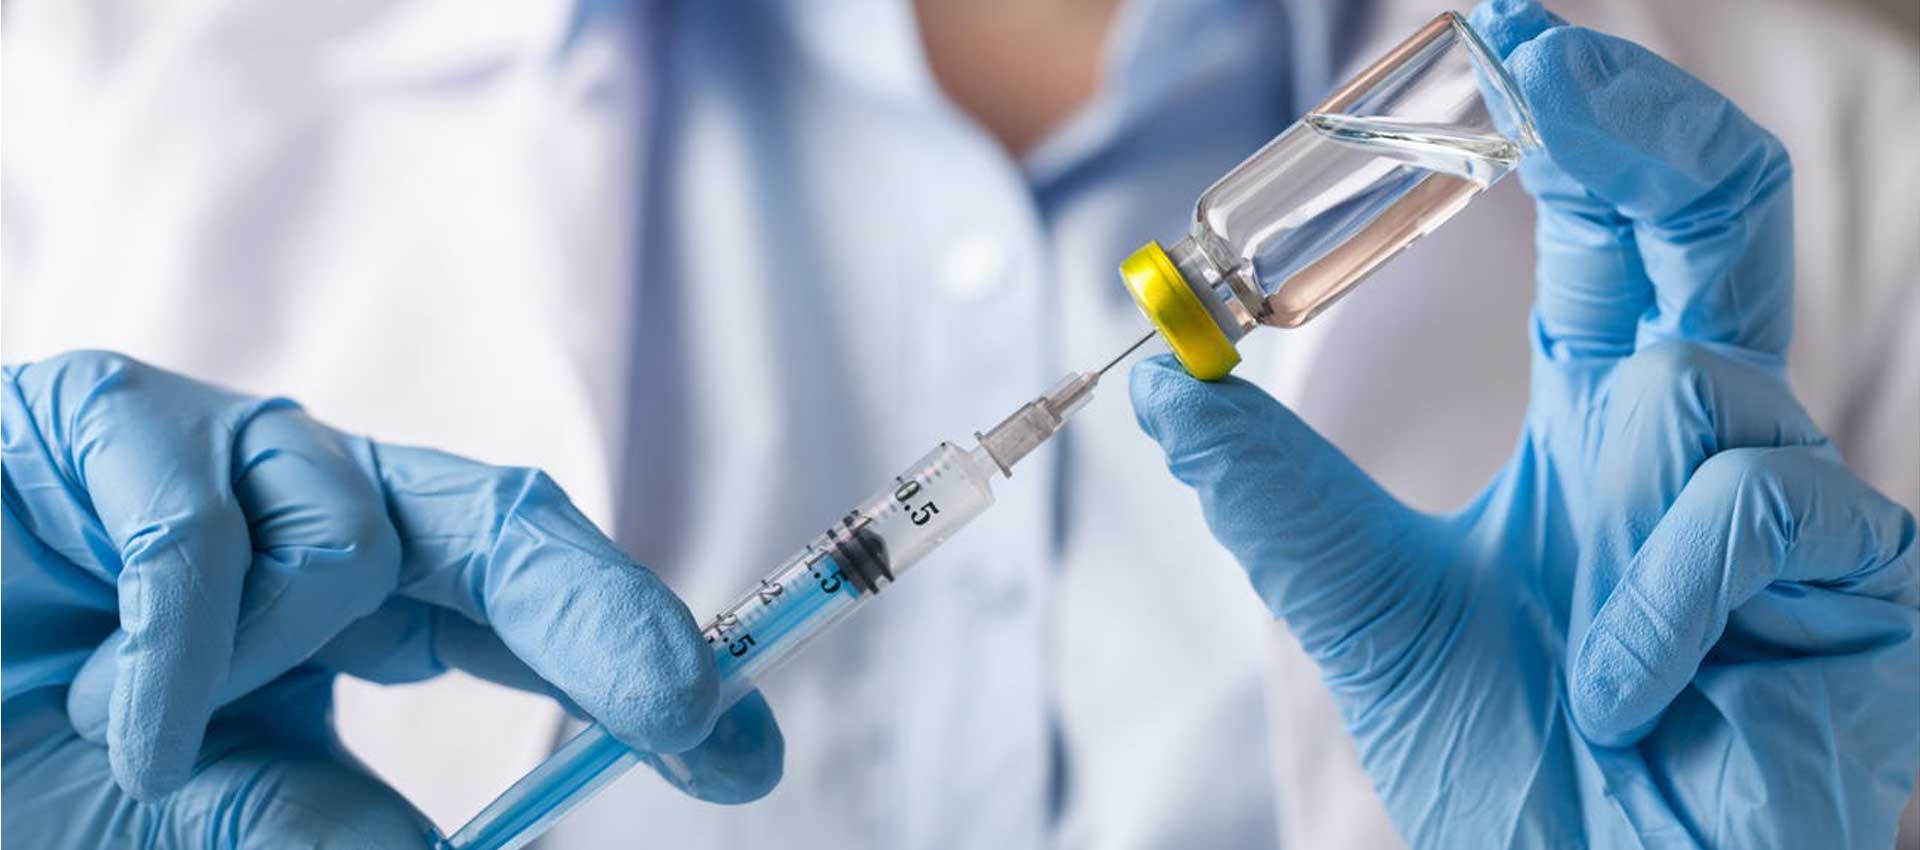 واکسن آنفولانزا برای همه ضروری نیست فقط گروه های پر خطر باید تزریق کنند